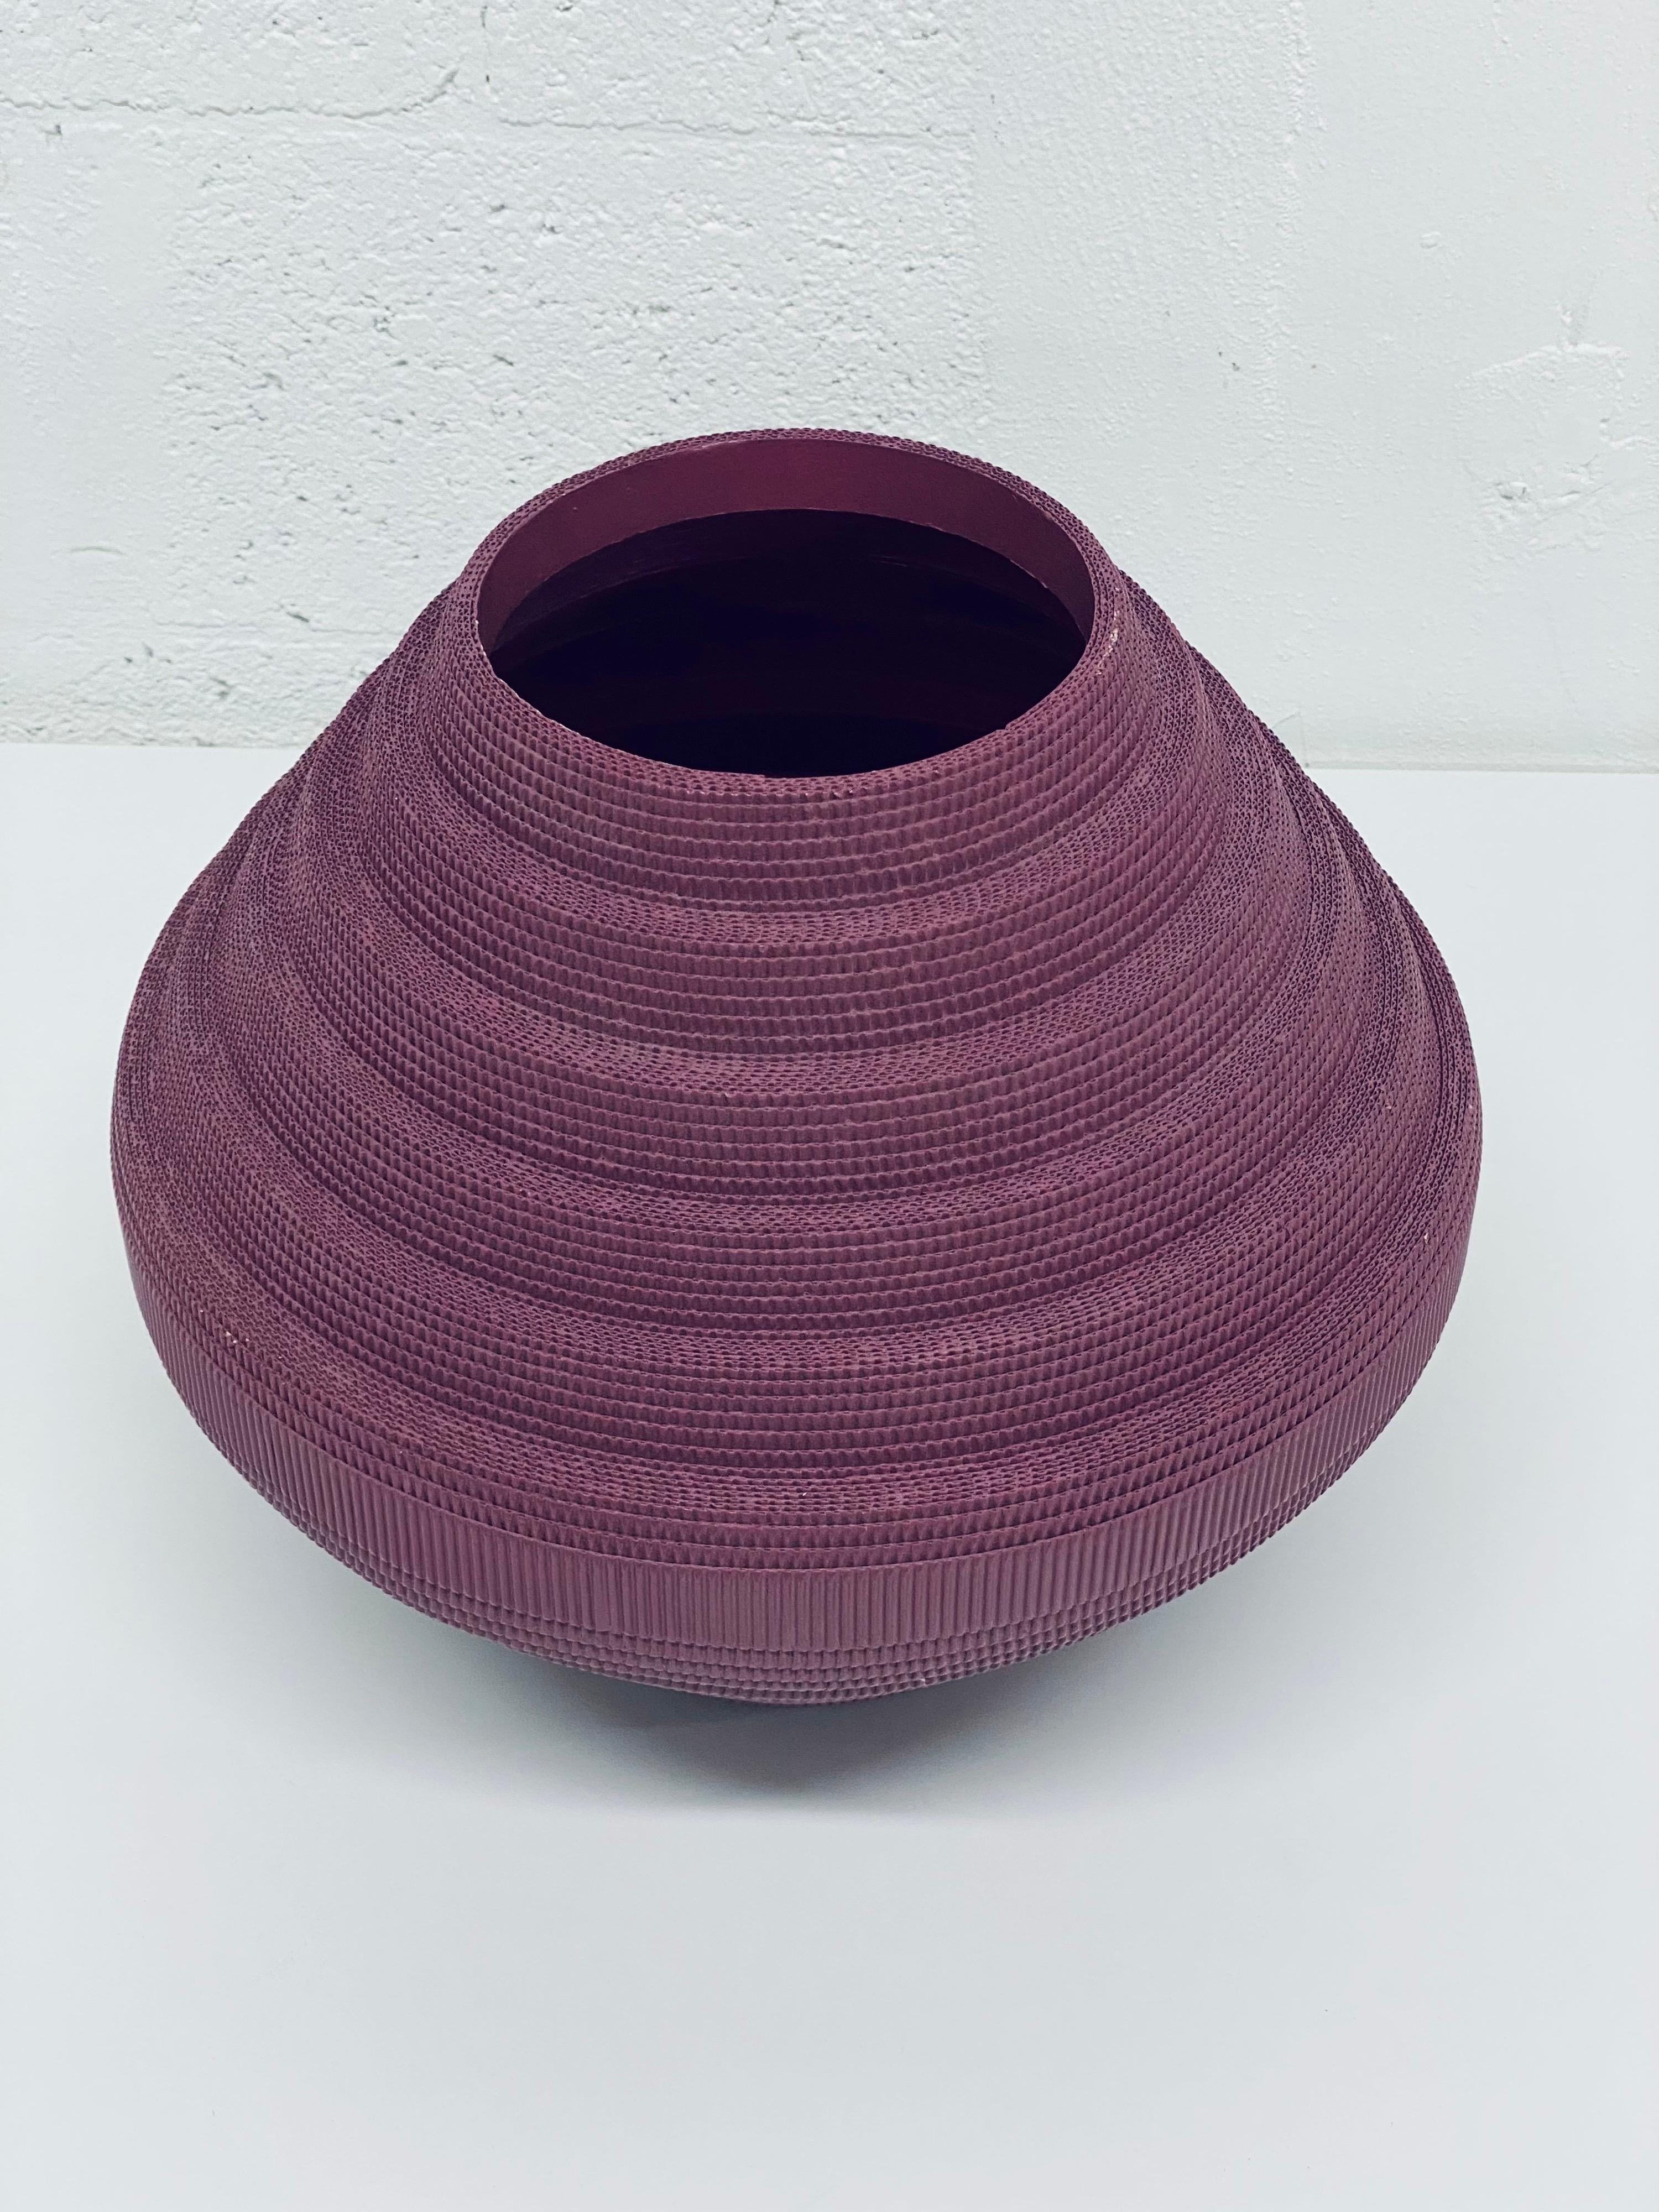 Natural Fiber Postmodern Purple Corrugated Cardboard Vase by Flute, Chicago